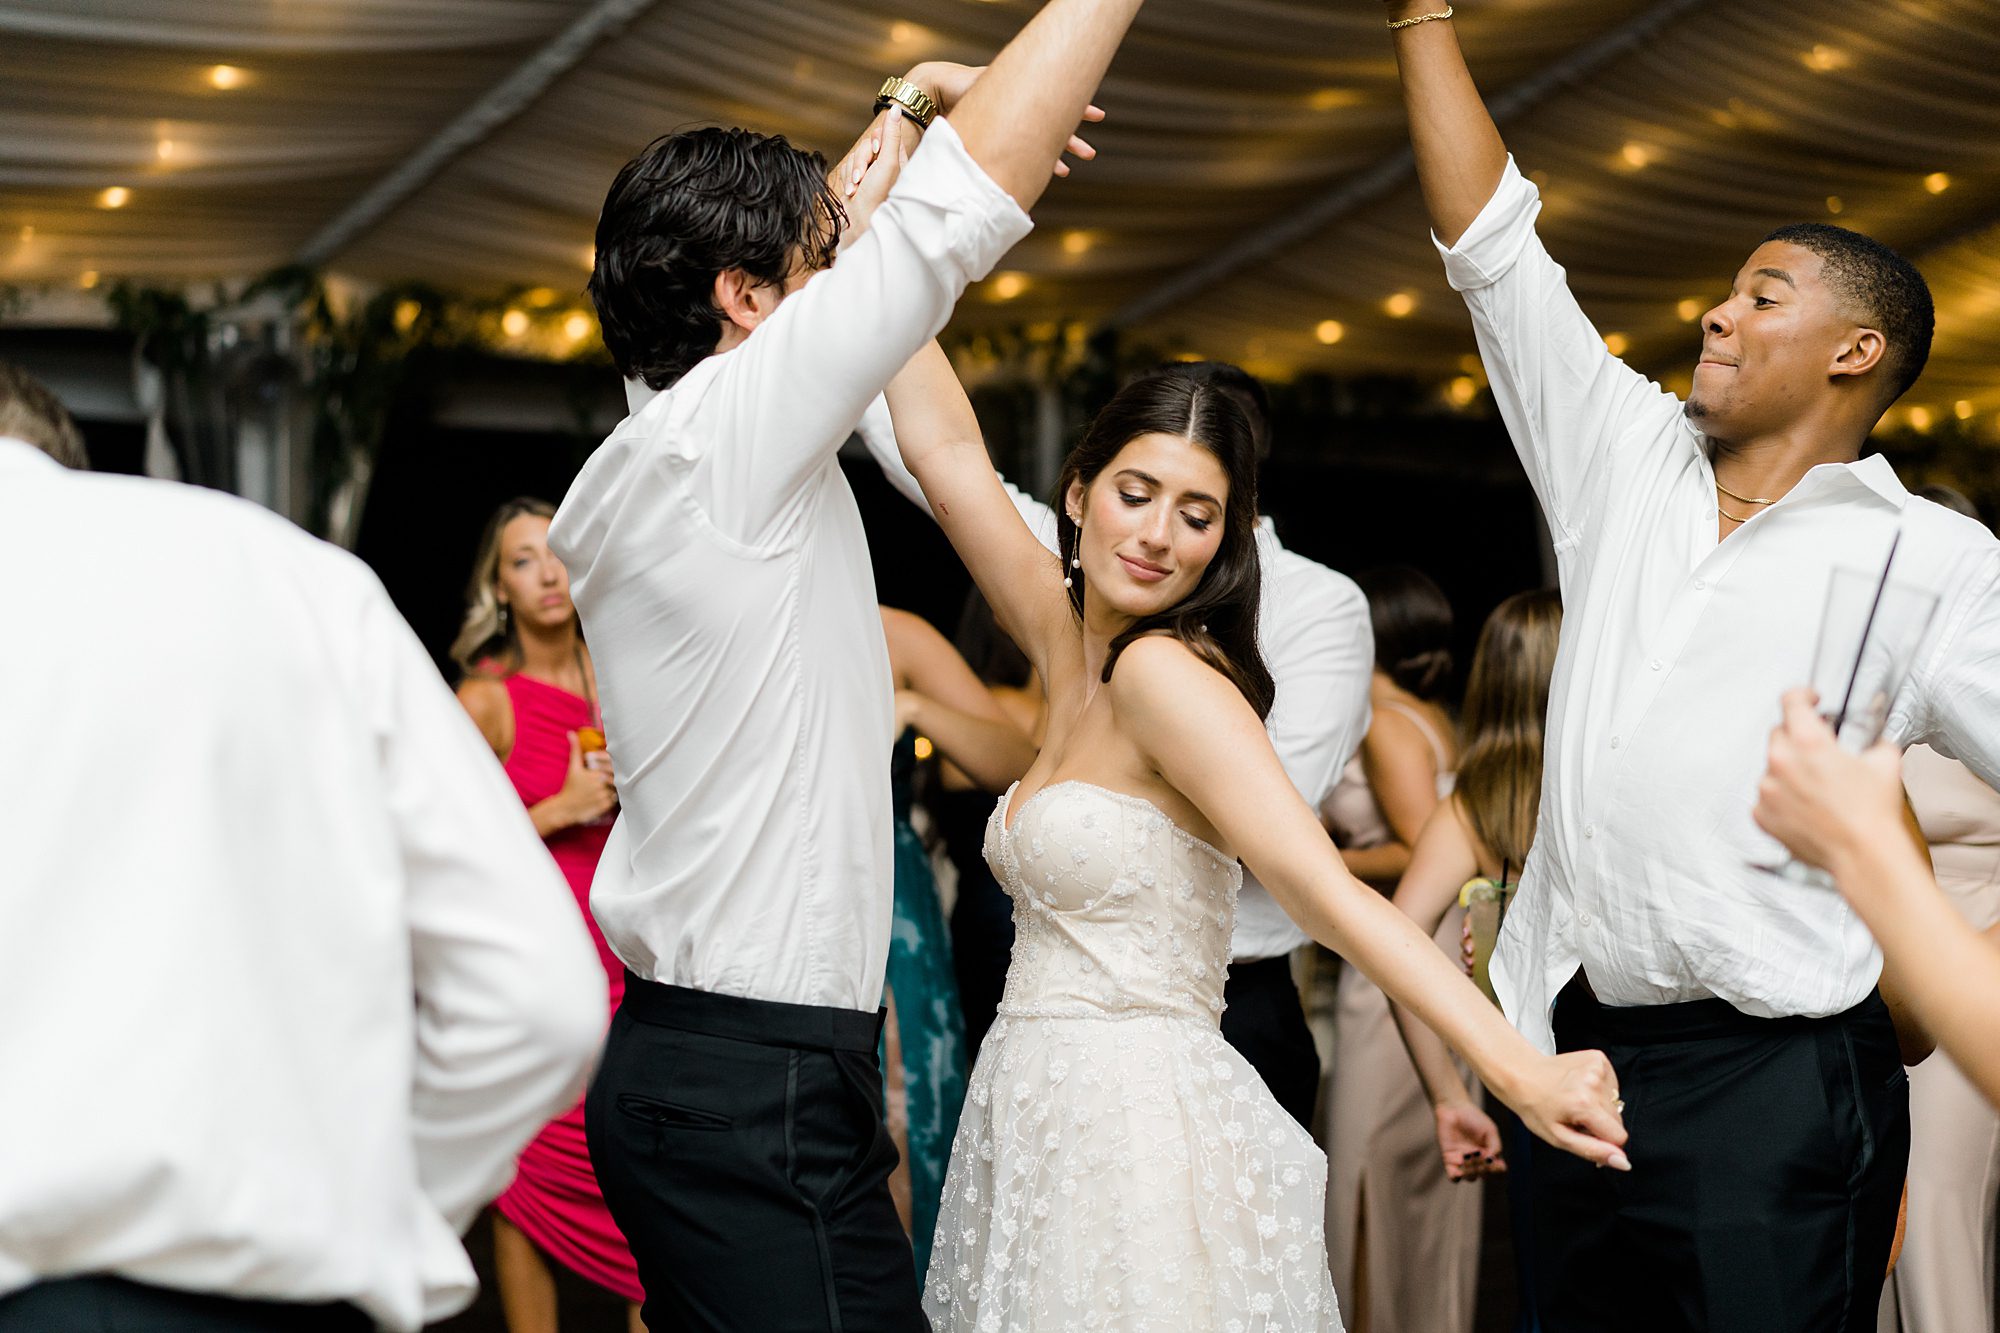 newlyweds celebrate wedding on the dance floor